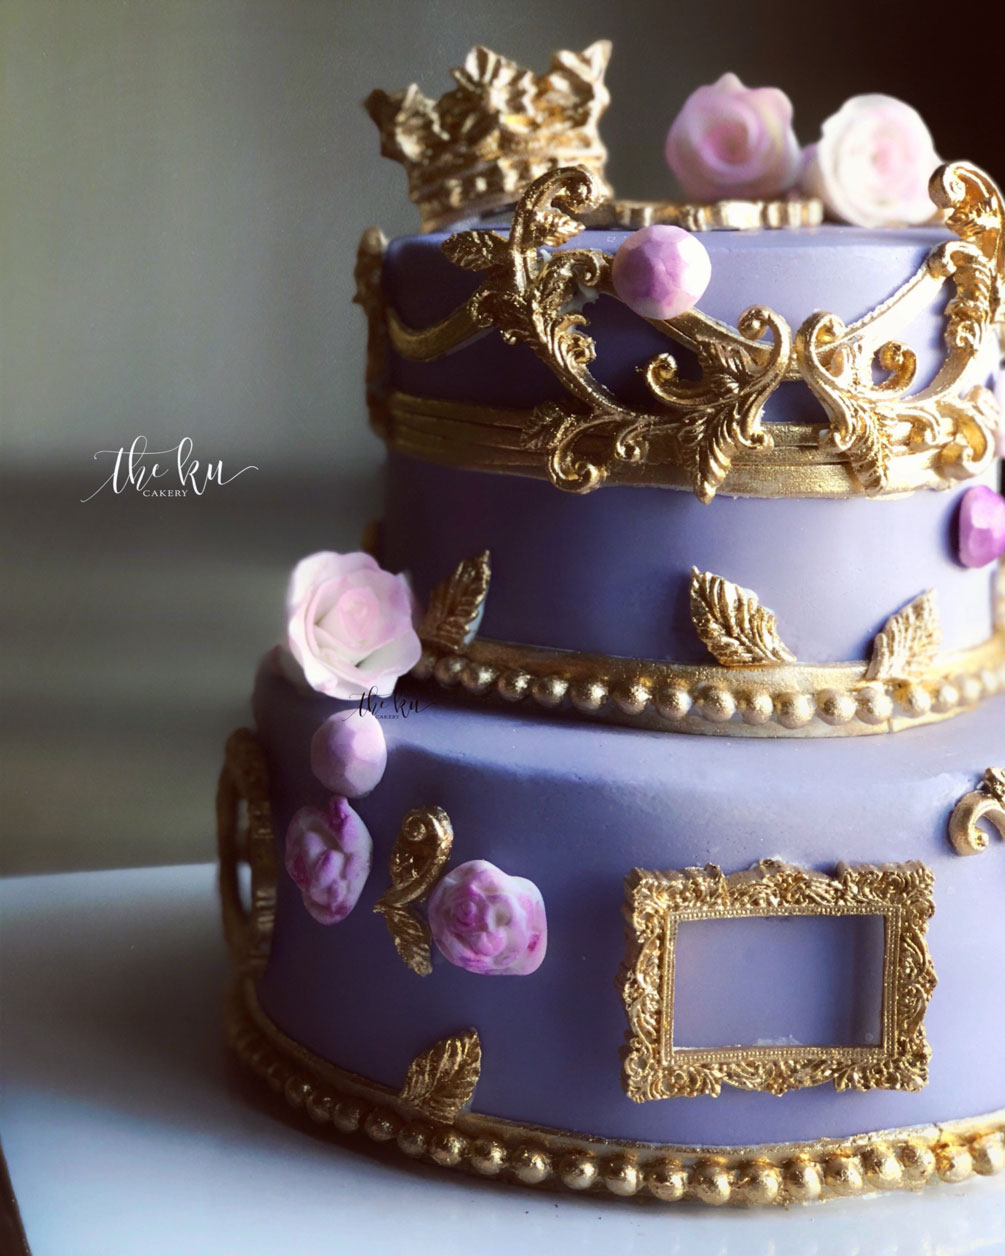 Wedding Cake by Karen Ku